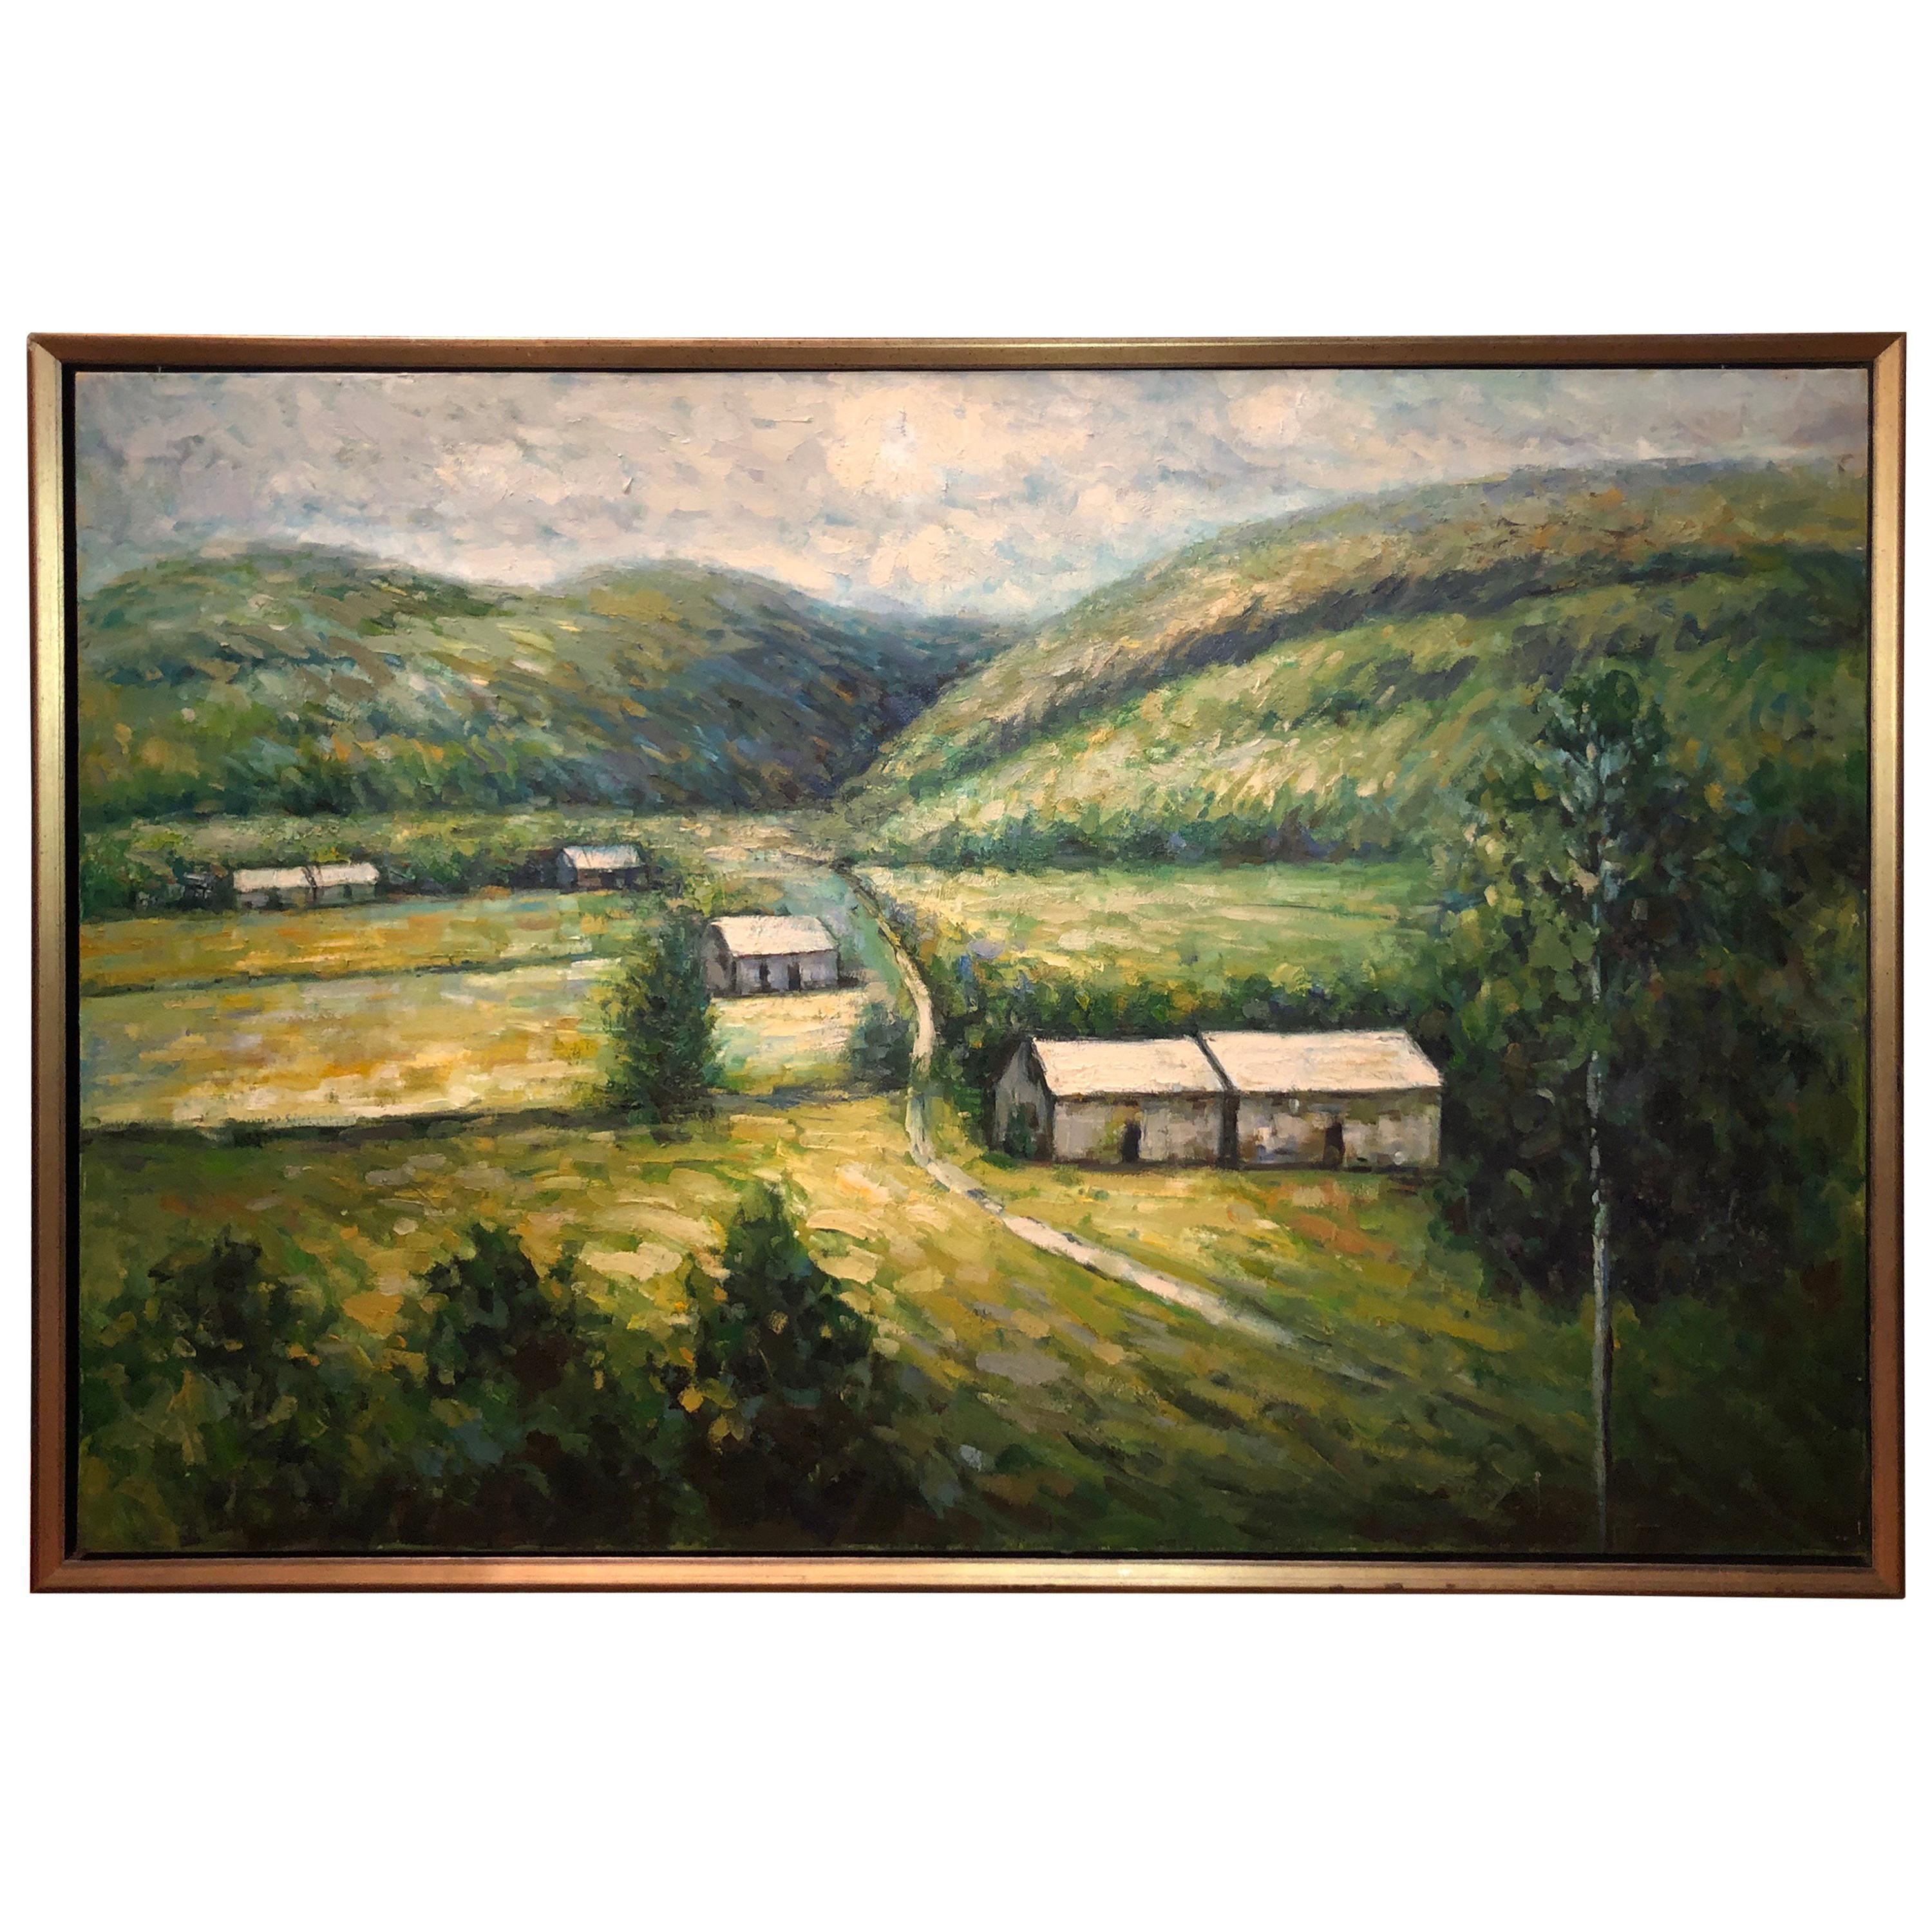 Très grand paysage en plein air, peinture à l’huile sur toile Impasto de 91 cm sur 152 cm